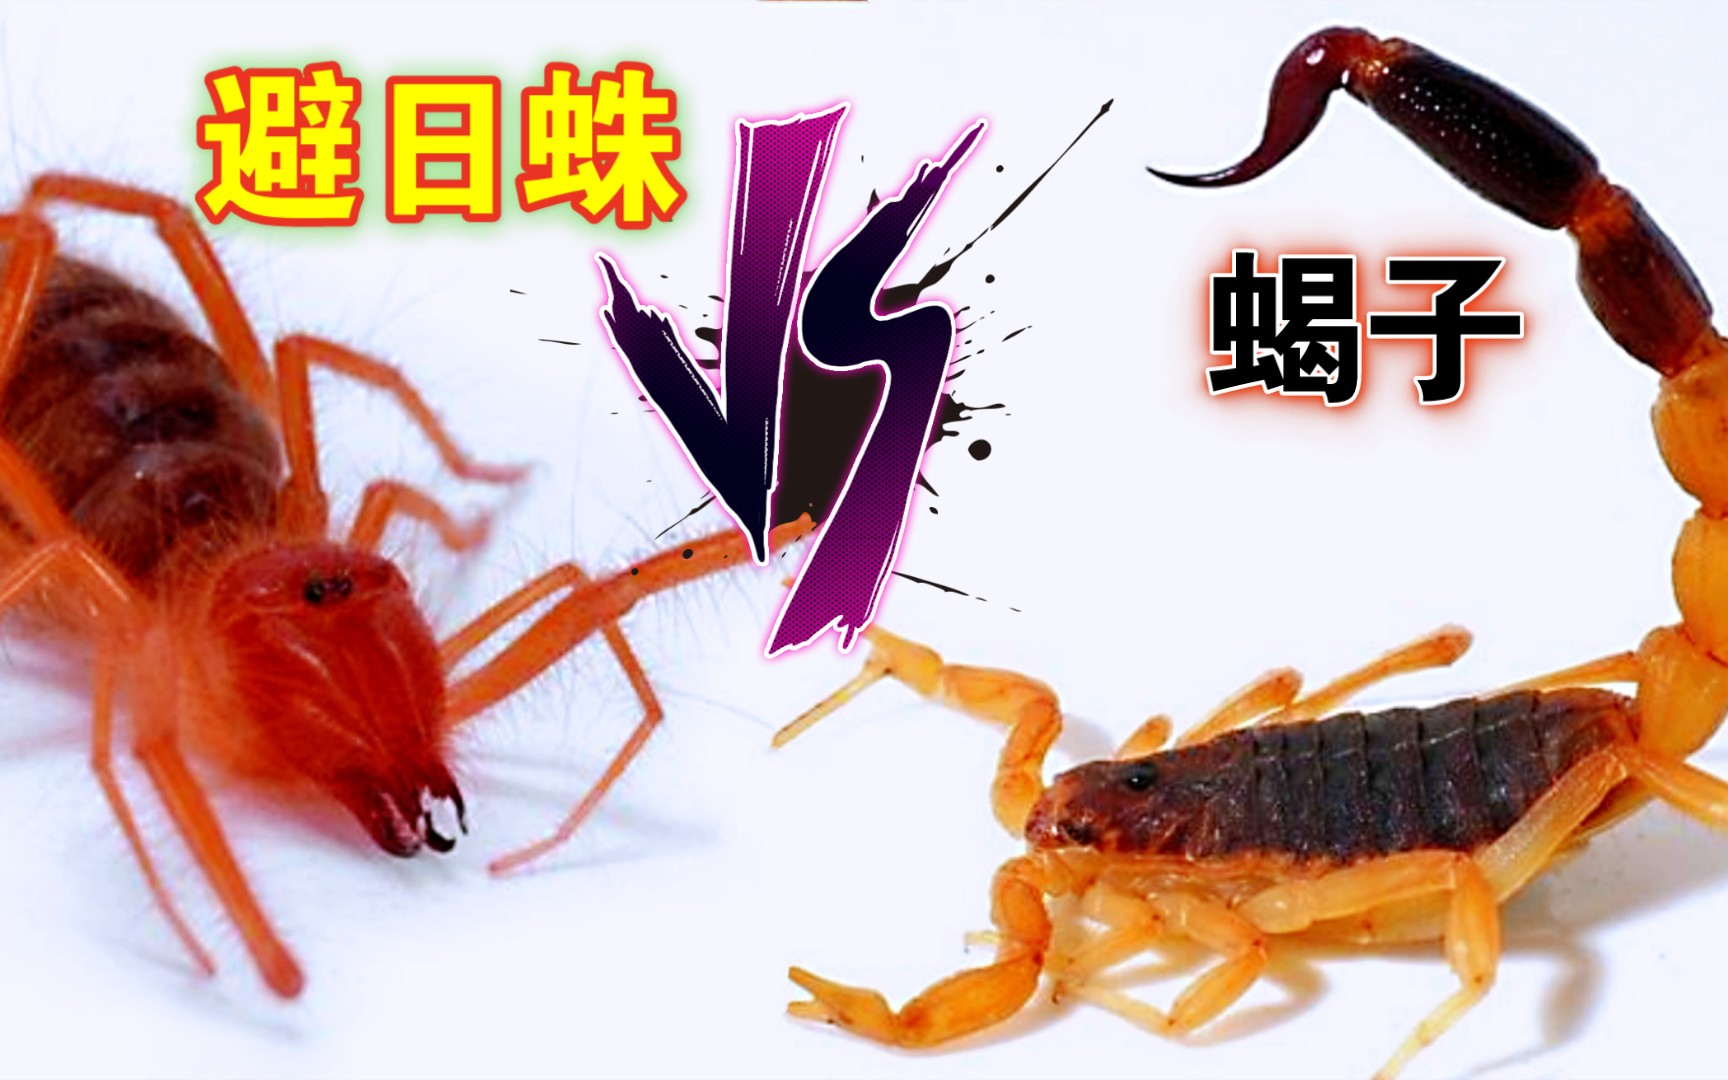 活动作品避日蛛大战蝎子到底是有毒针的厉害还是拥有大螯的更胜一筹4k